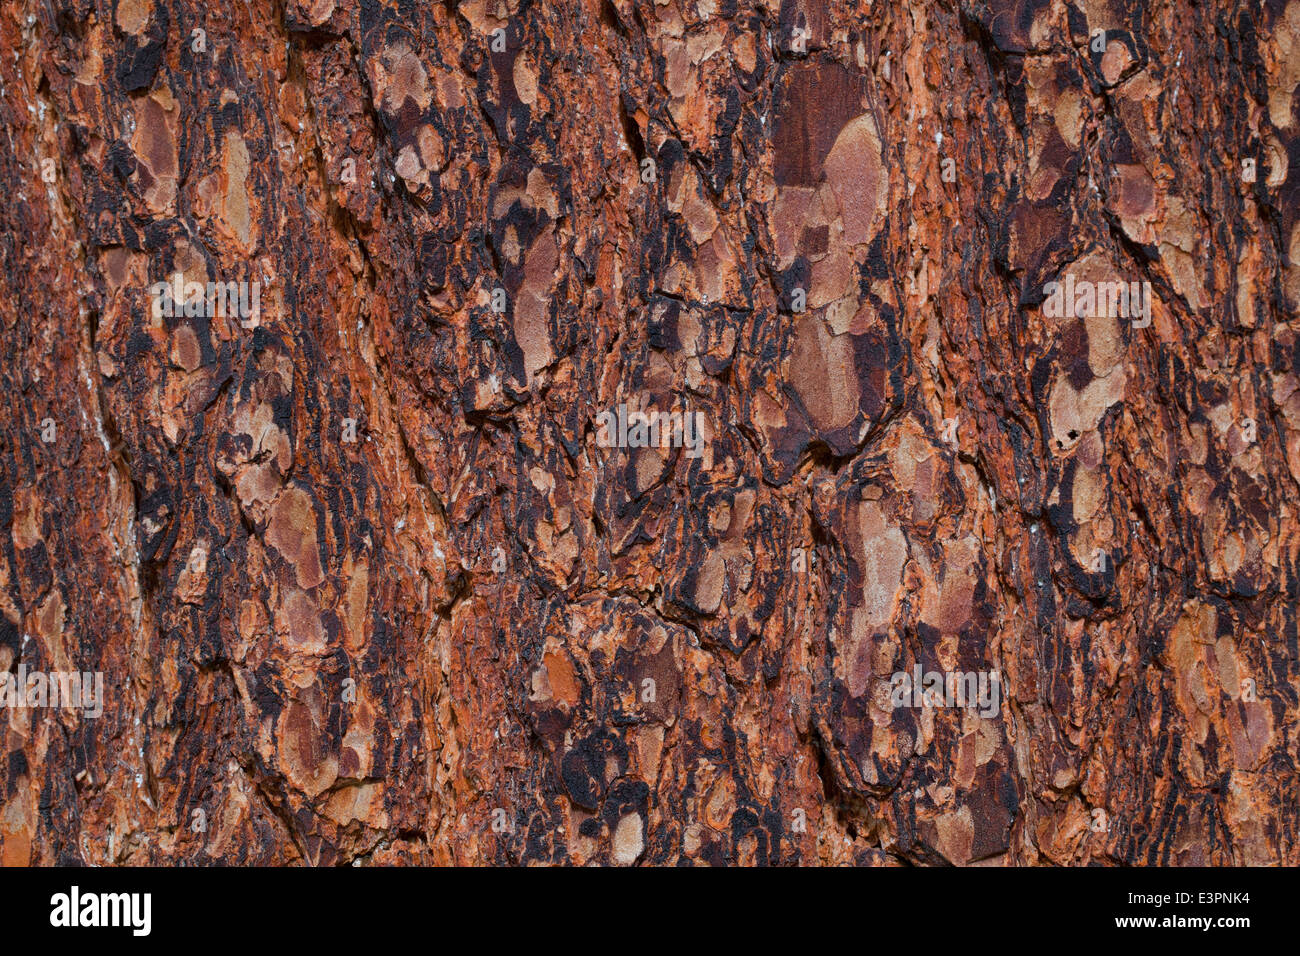 Swiss Pine (Pinus cembra), close-up of bark. Graubuenden, Switzerland Stock Photo